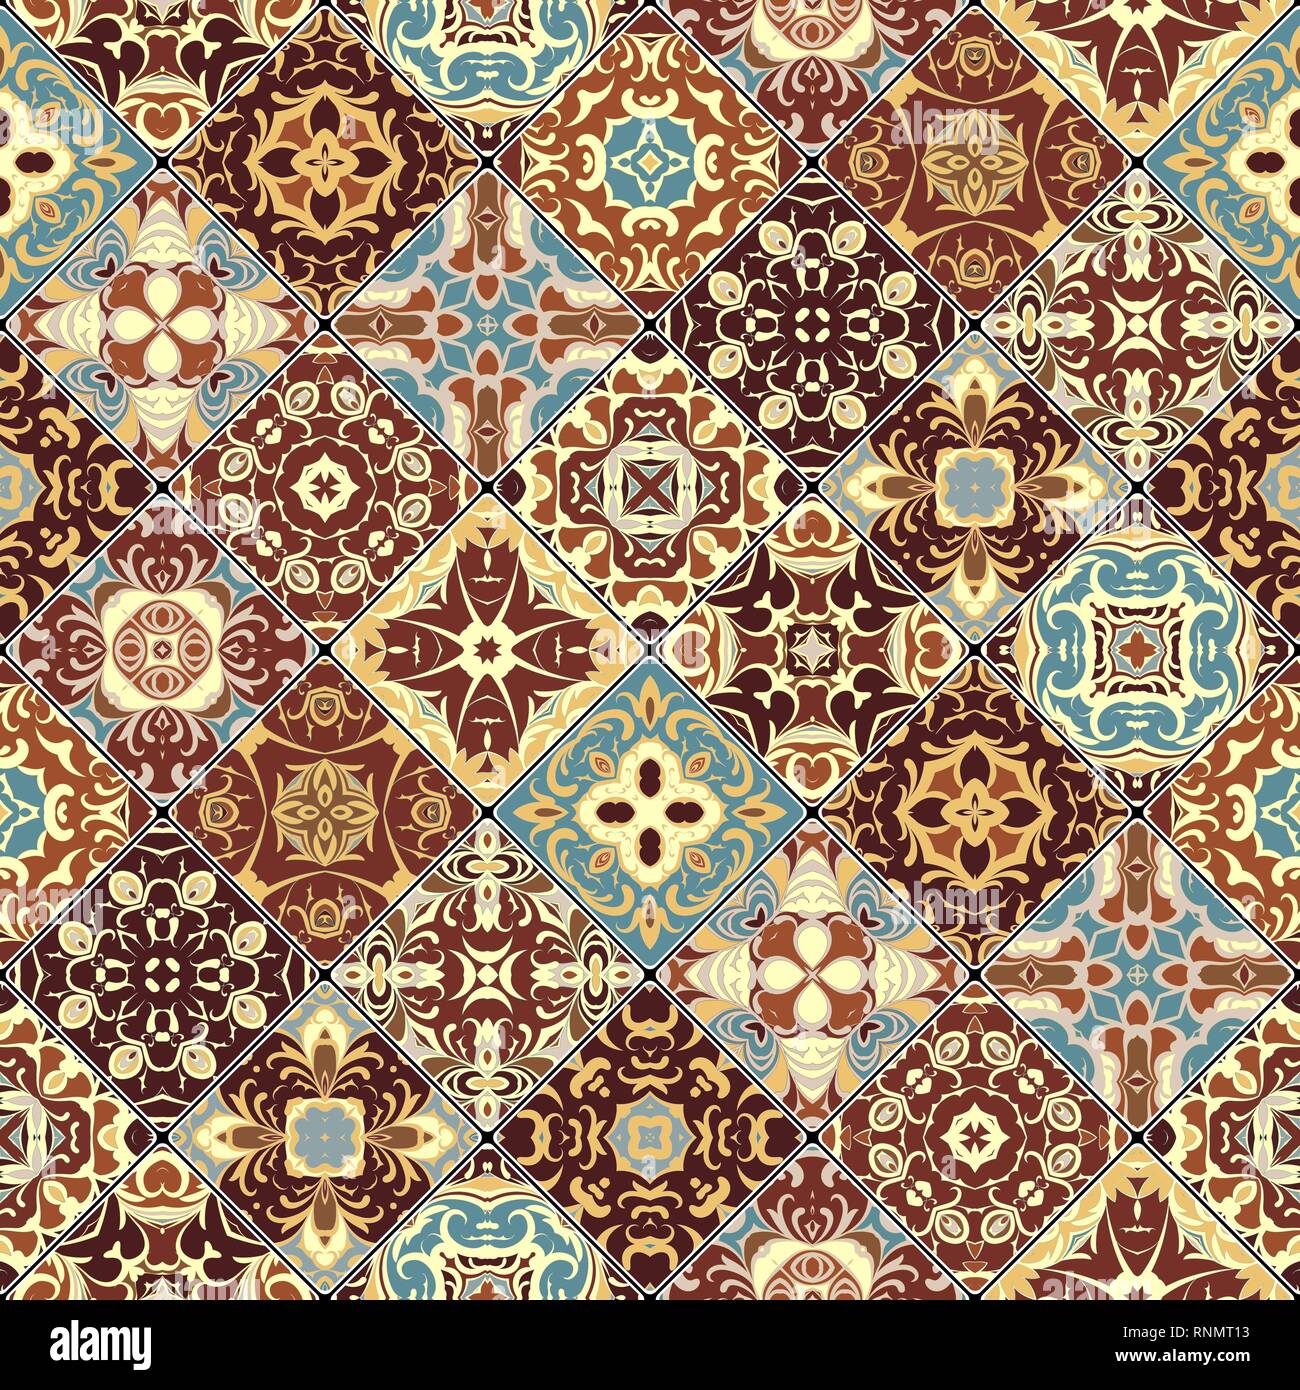 Brun et bleu motifs abstraits dans l'ensemble de la mosaïque. Morceaux carrés dans un style oriental. Vector illustration. Idéal pour l'impression sur tissu ou papier. Illustration de Vecteur